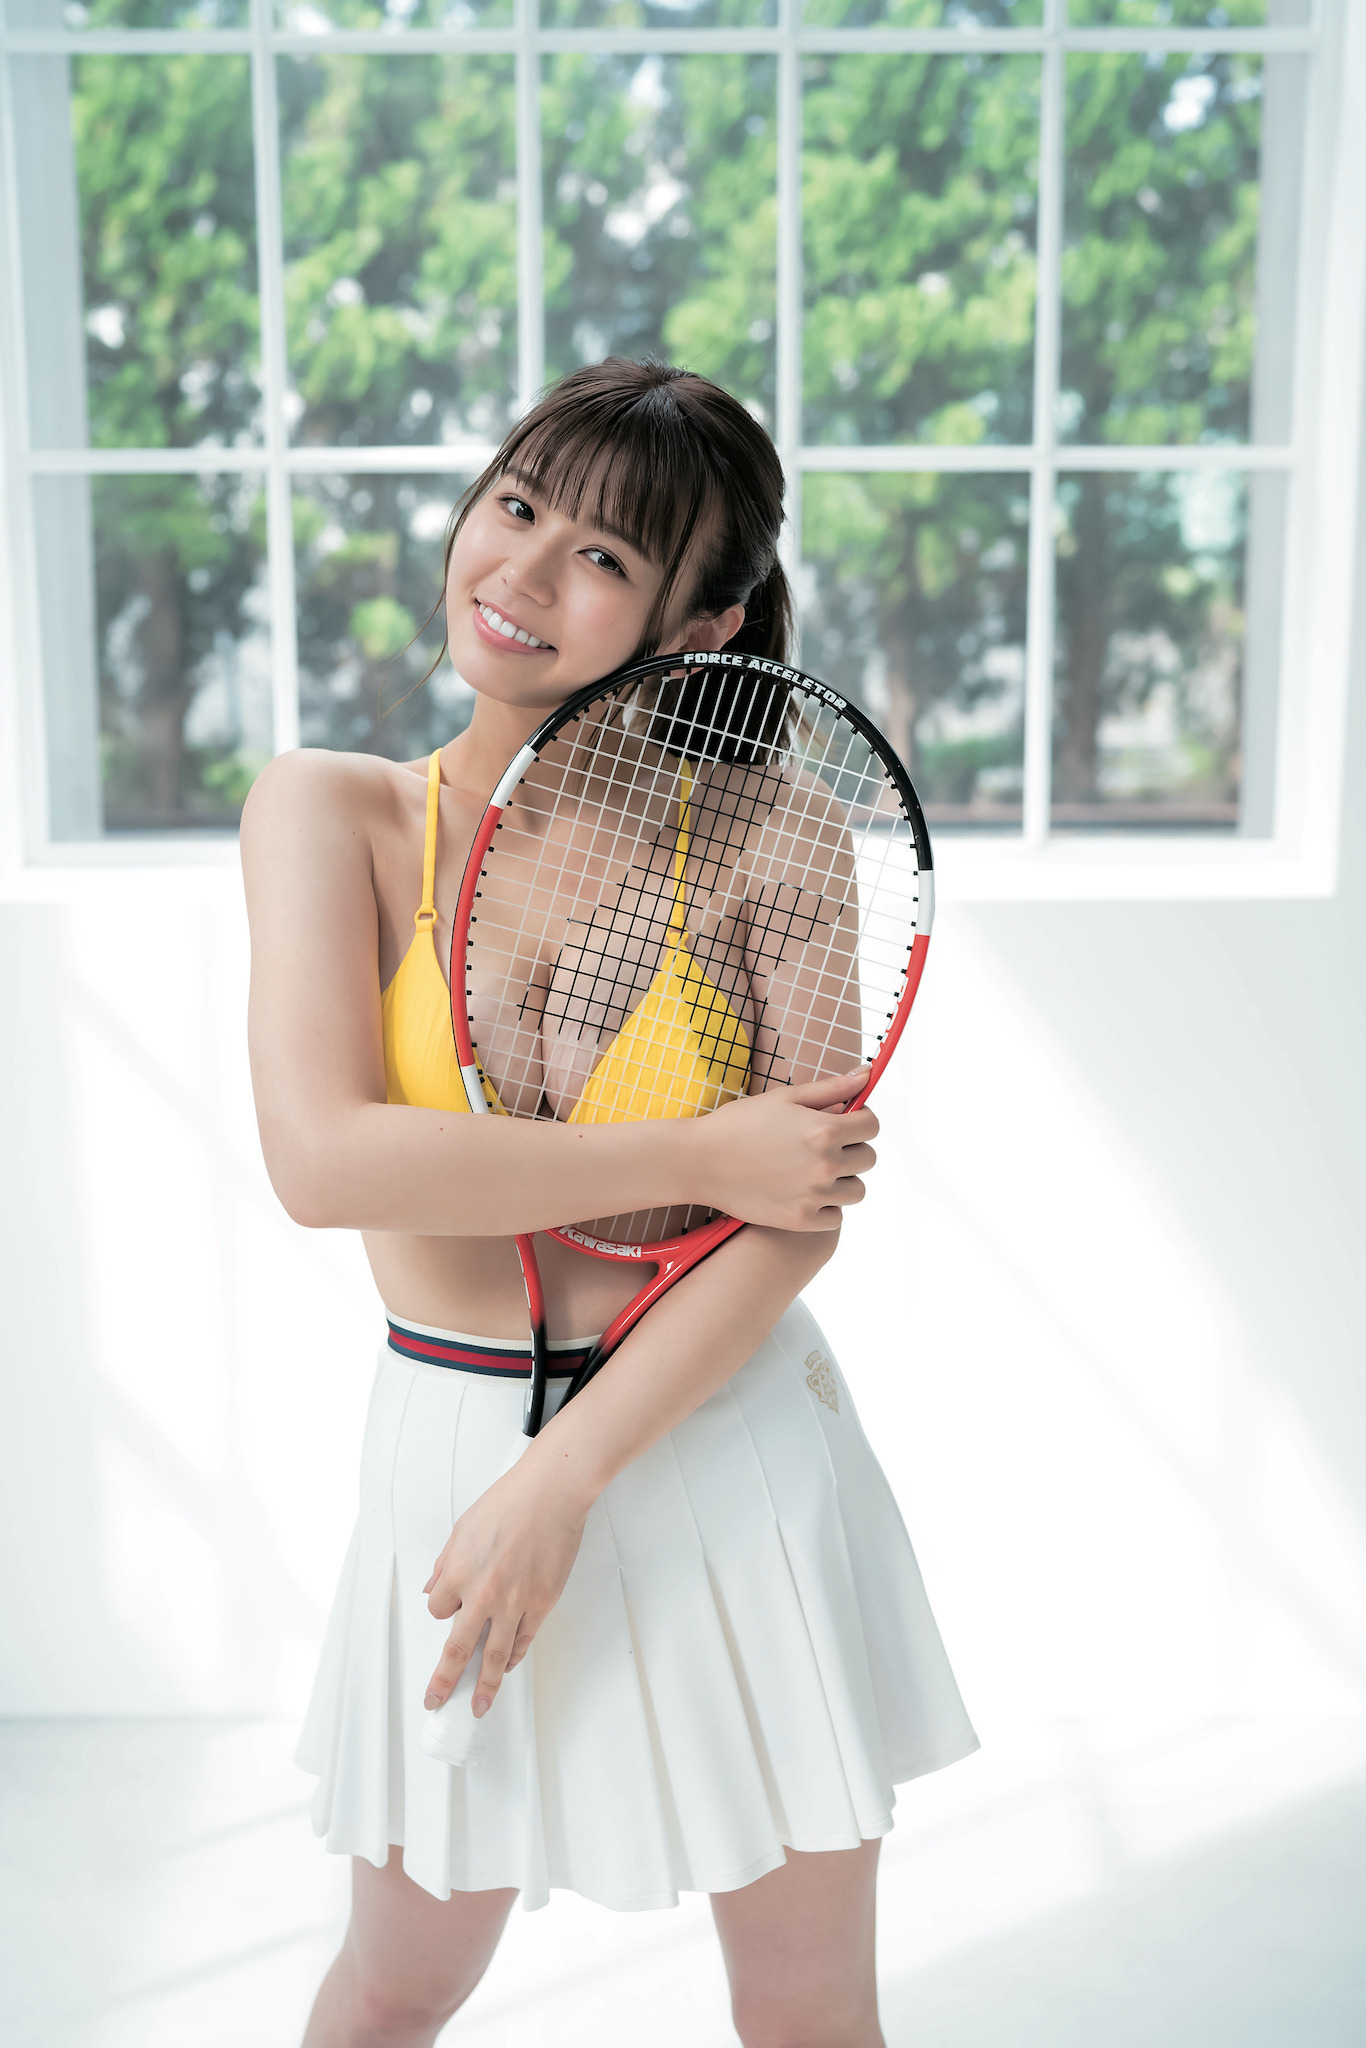 井口綾子のテニスウェア姿にファン胸キュン オフショット動画公開 Rbb Today